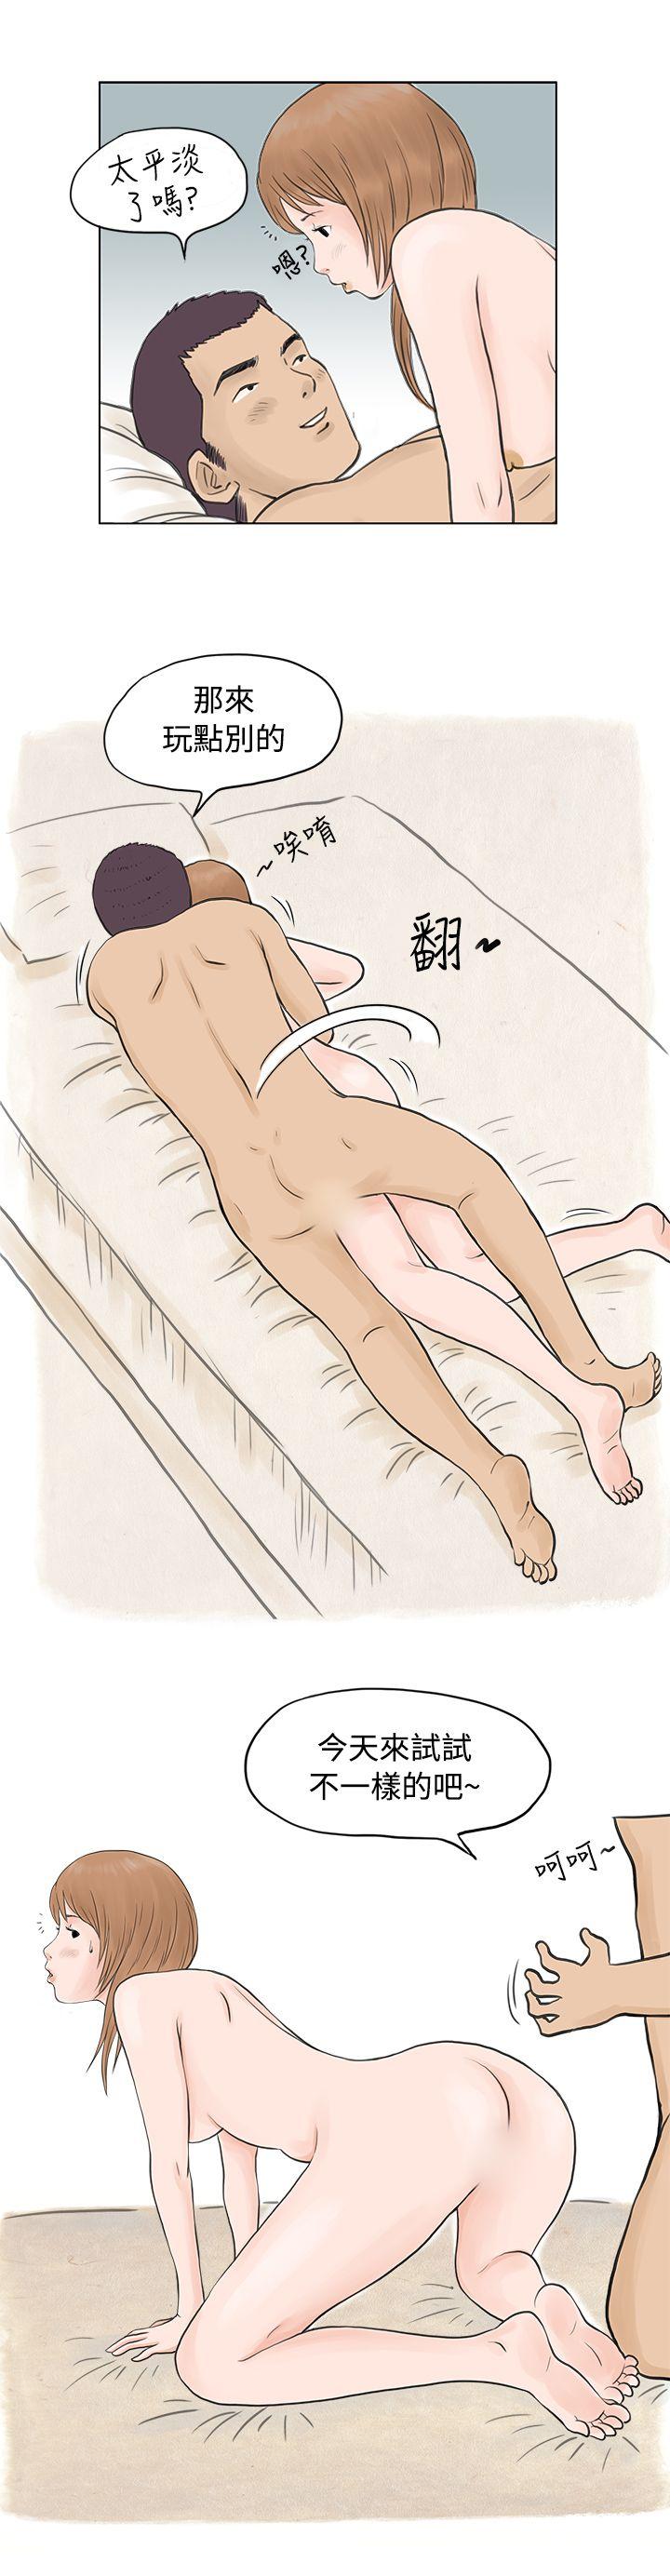 秘密Story  男友说要叫应召男(上) 漫画图片3.jpg